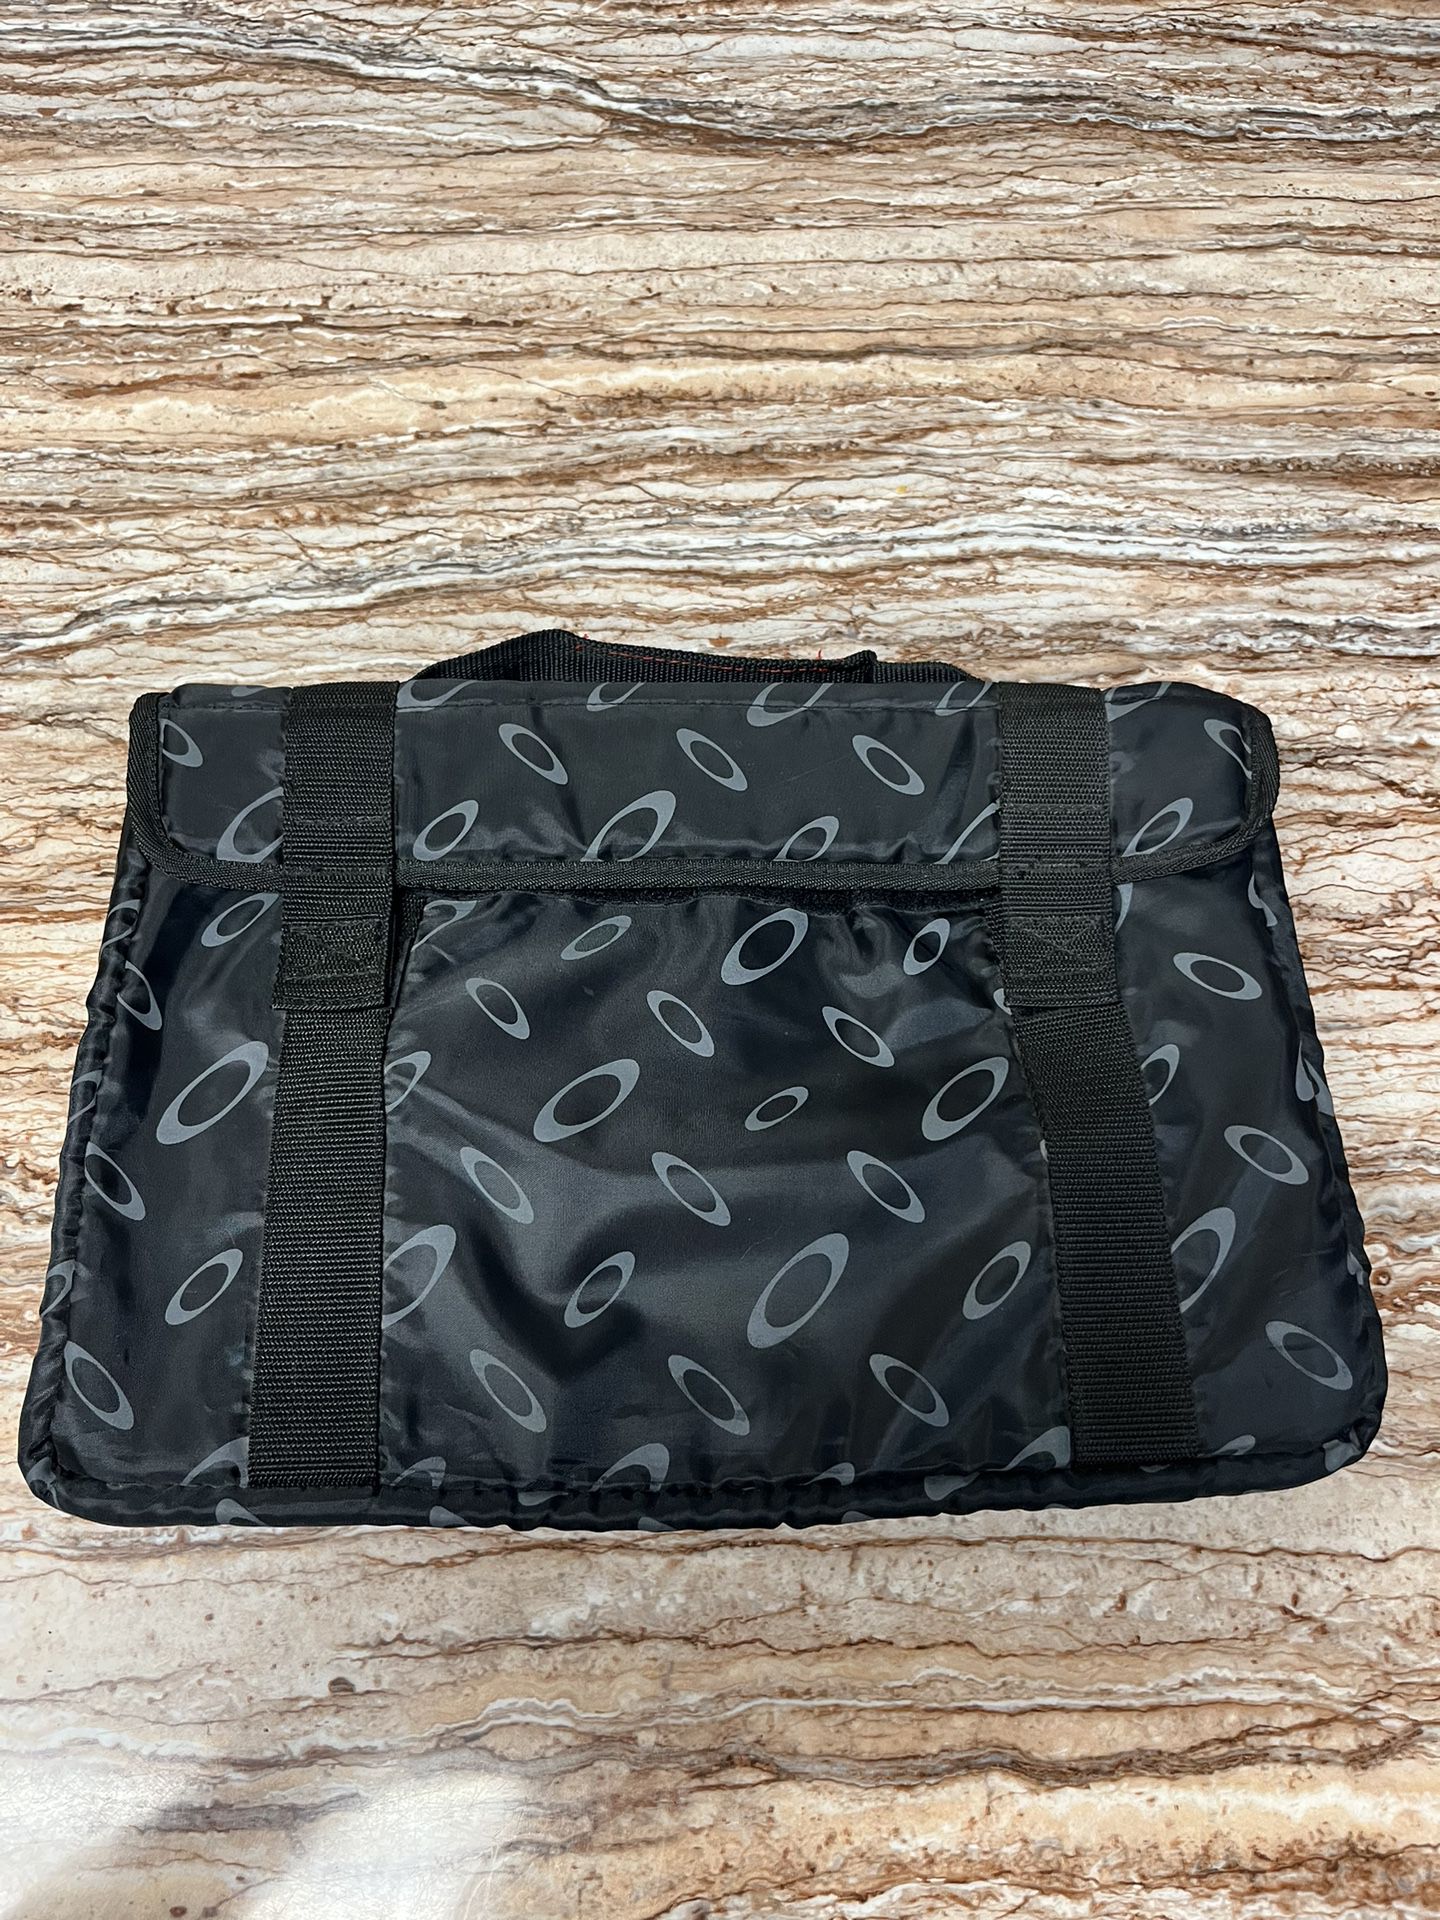 OAKLEY Tactical Field Gear Laptop Bag